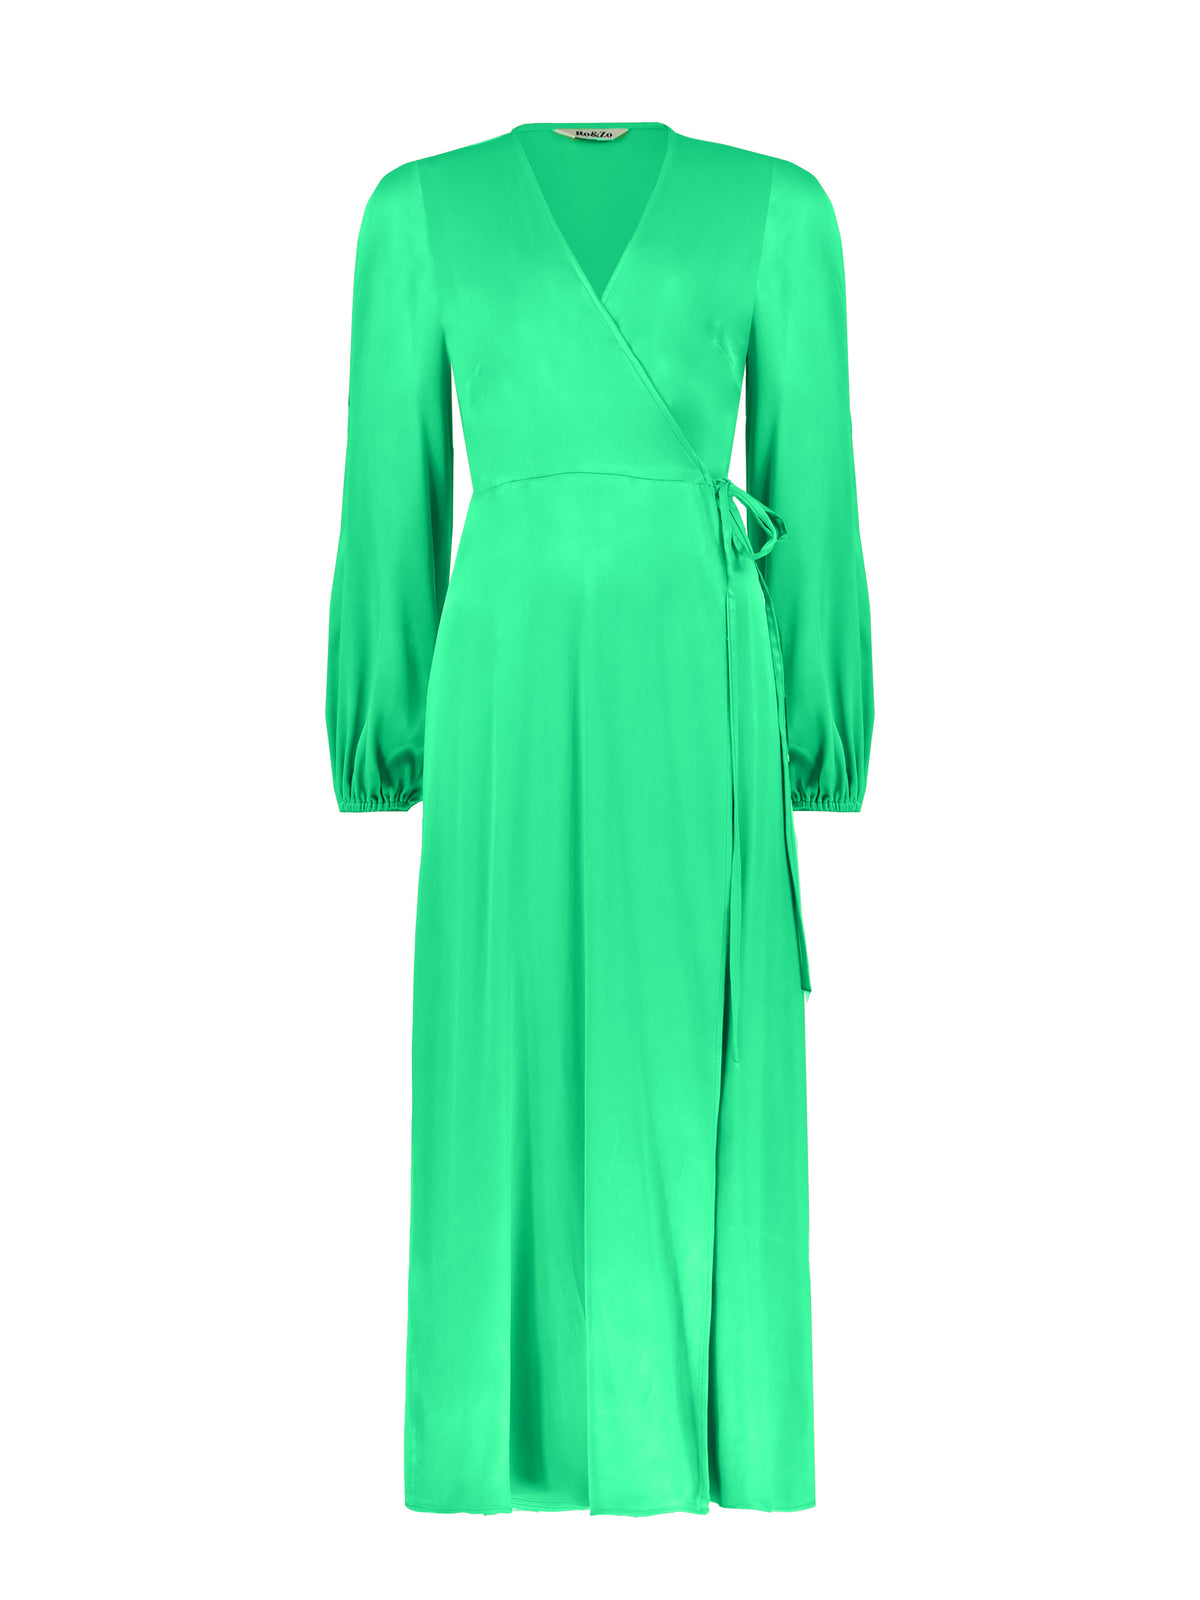 Green Satin Cold Shoulder Wrap Dress